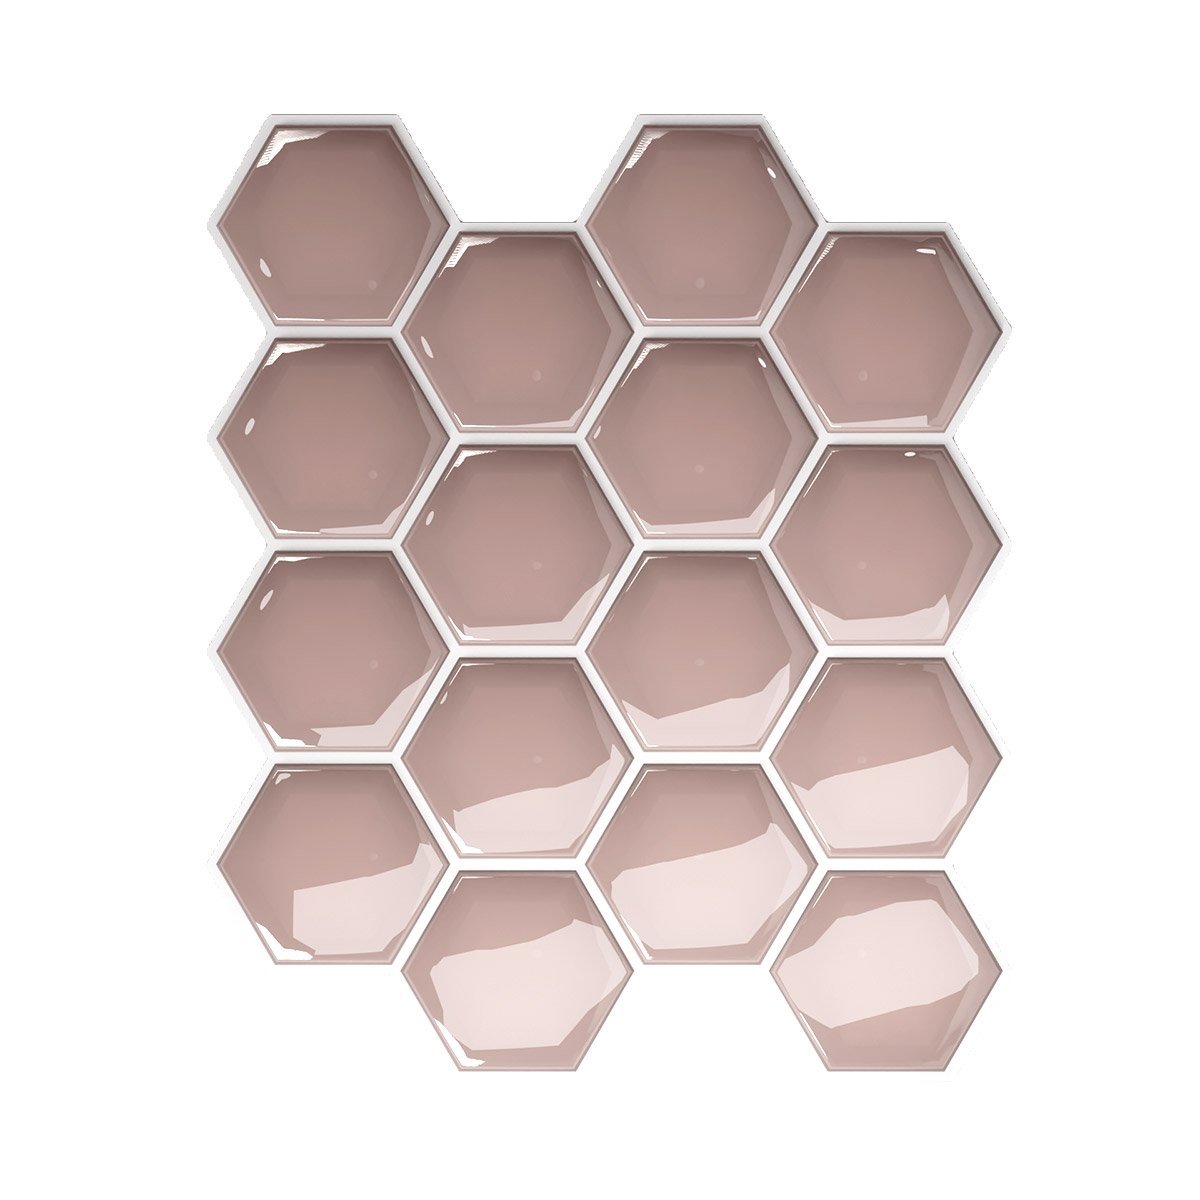 Pastilha Hexagonal Rosé Gold com Rejunte Branco Lavável Banheiro Cozinha Sala